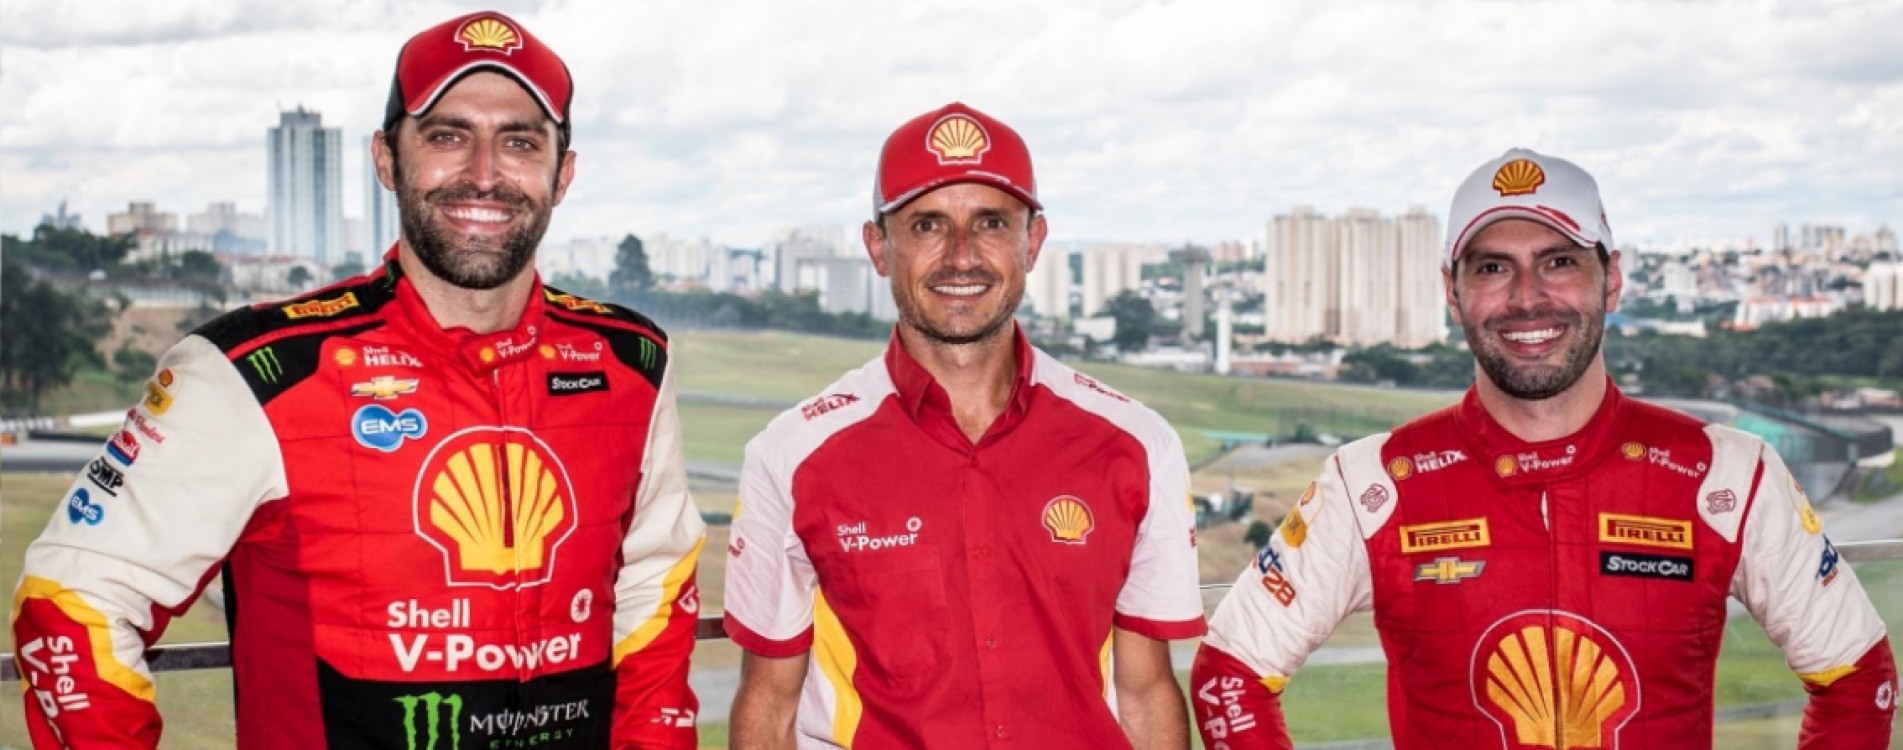 Átila Abreu, Joselmo Barcik e Galid Osman, da Pole Motorsport